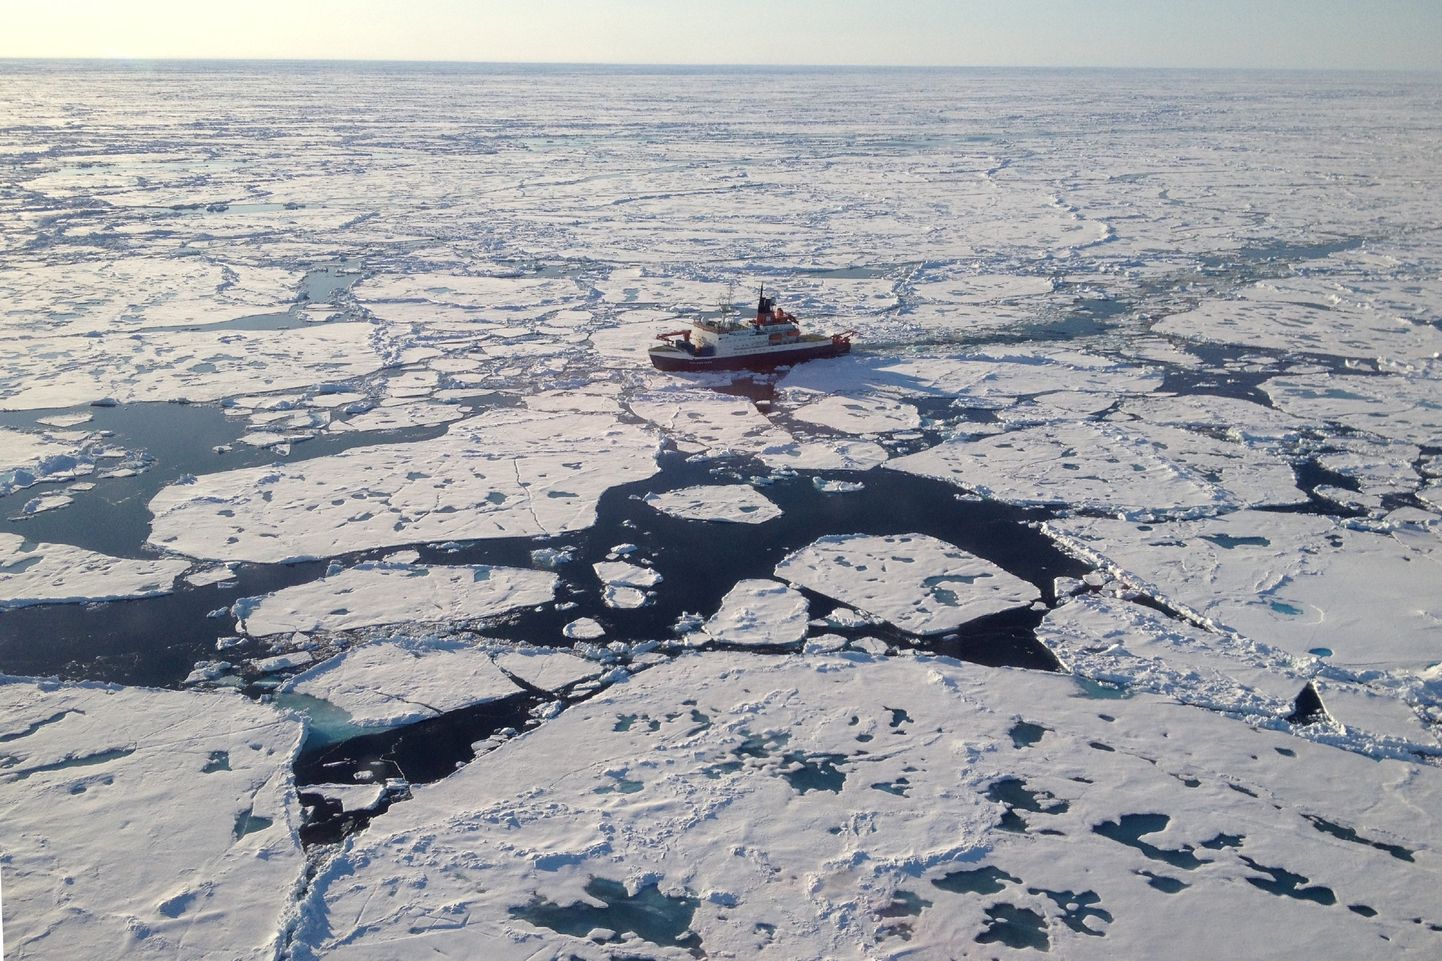 Uurimisalus Polarstern Põhja-Jäämeres.